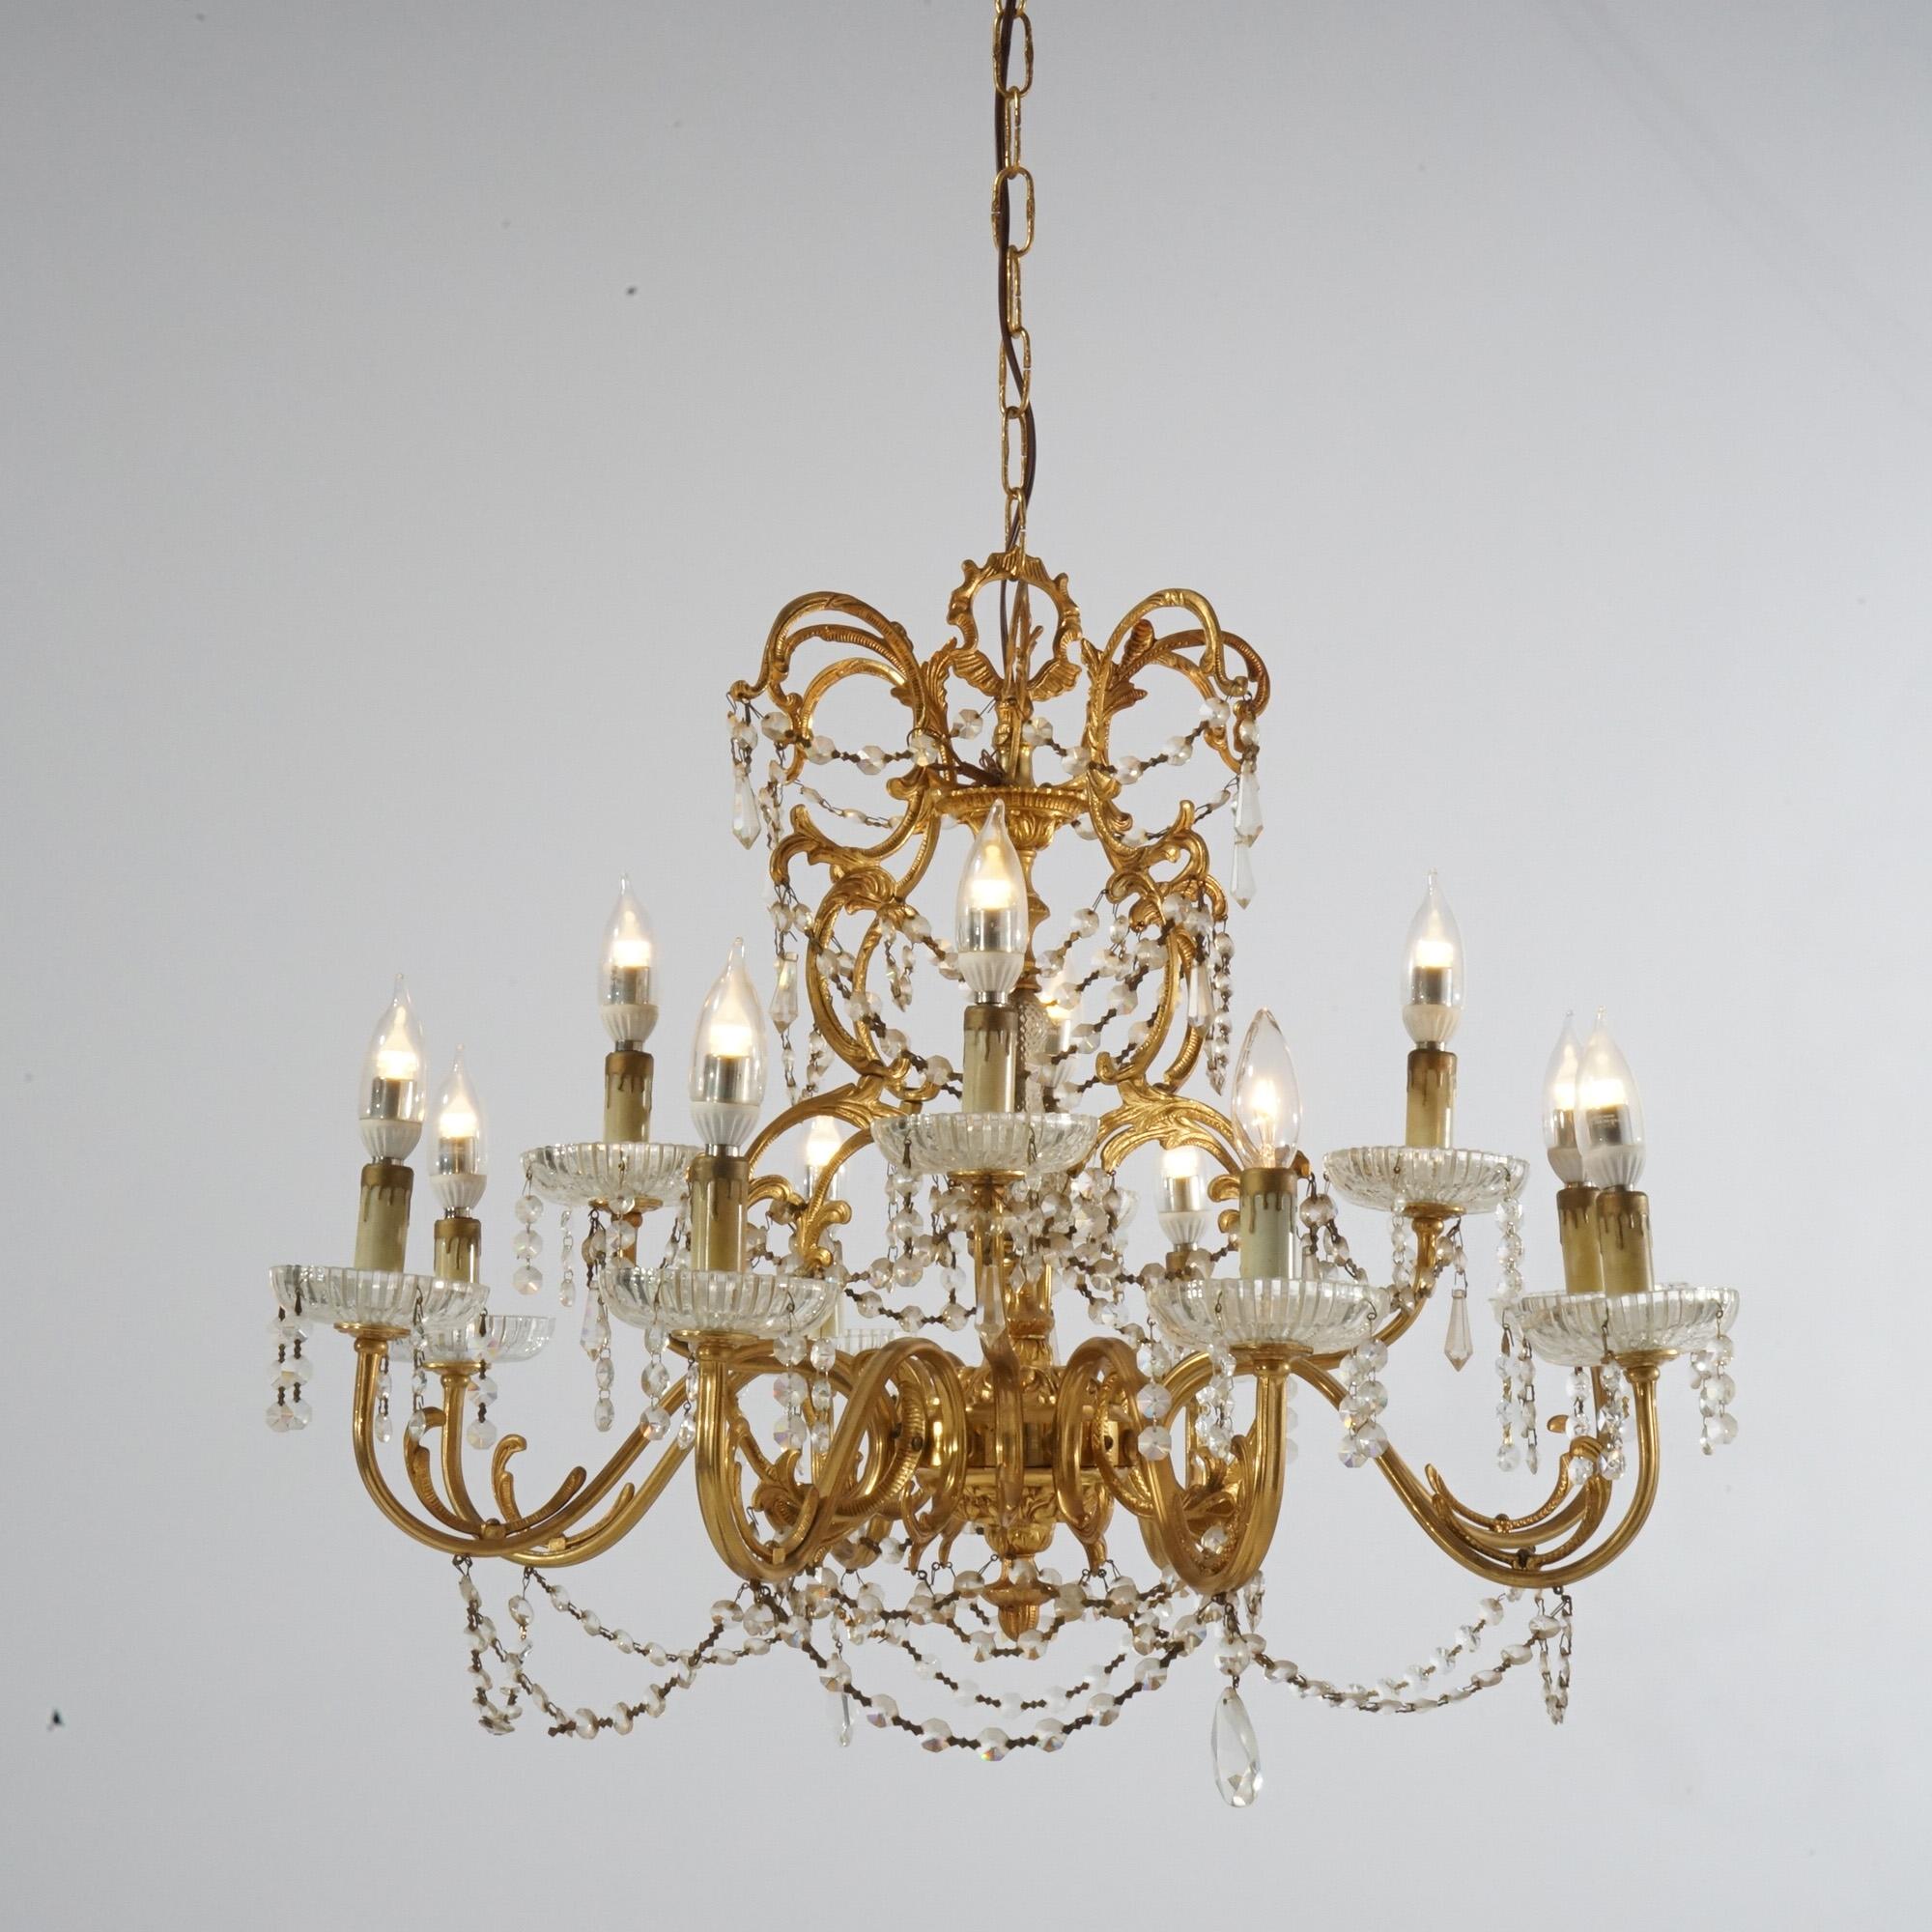 Ein antiker Kronleuchter im französischen Stil hat einen vergoldeten Rahmen mit verschnörkelten, blattförmigen Armen, die in zwölf Kerzenlichtern enden, sowie aufgereihte und tropfenförmige Kristalle, um 1930

Maße: 38''H x 26,5''B x 26,5''T;